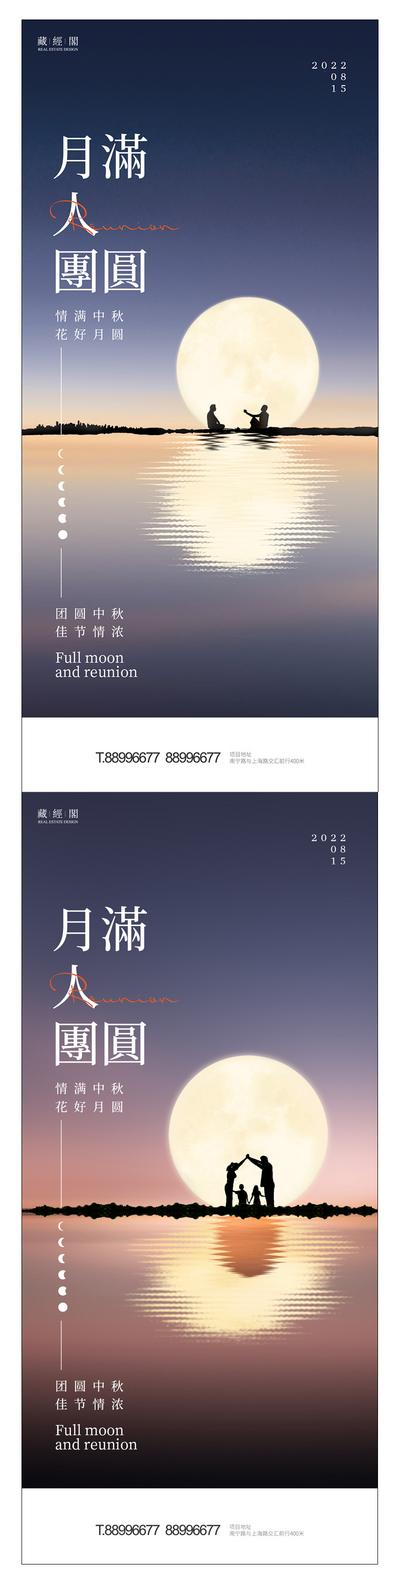 南门网 海报 中国传统节日 中秋节 湖景 月亮 家人 剪影